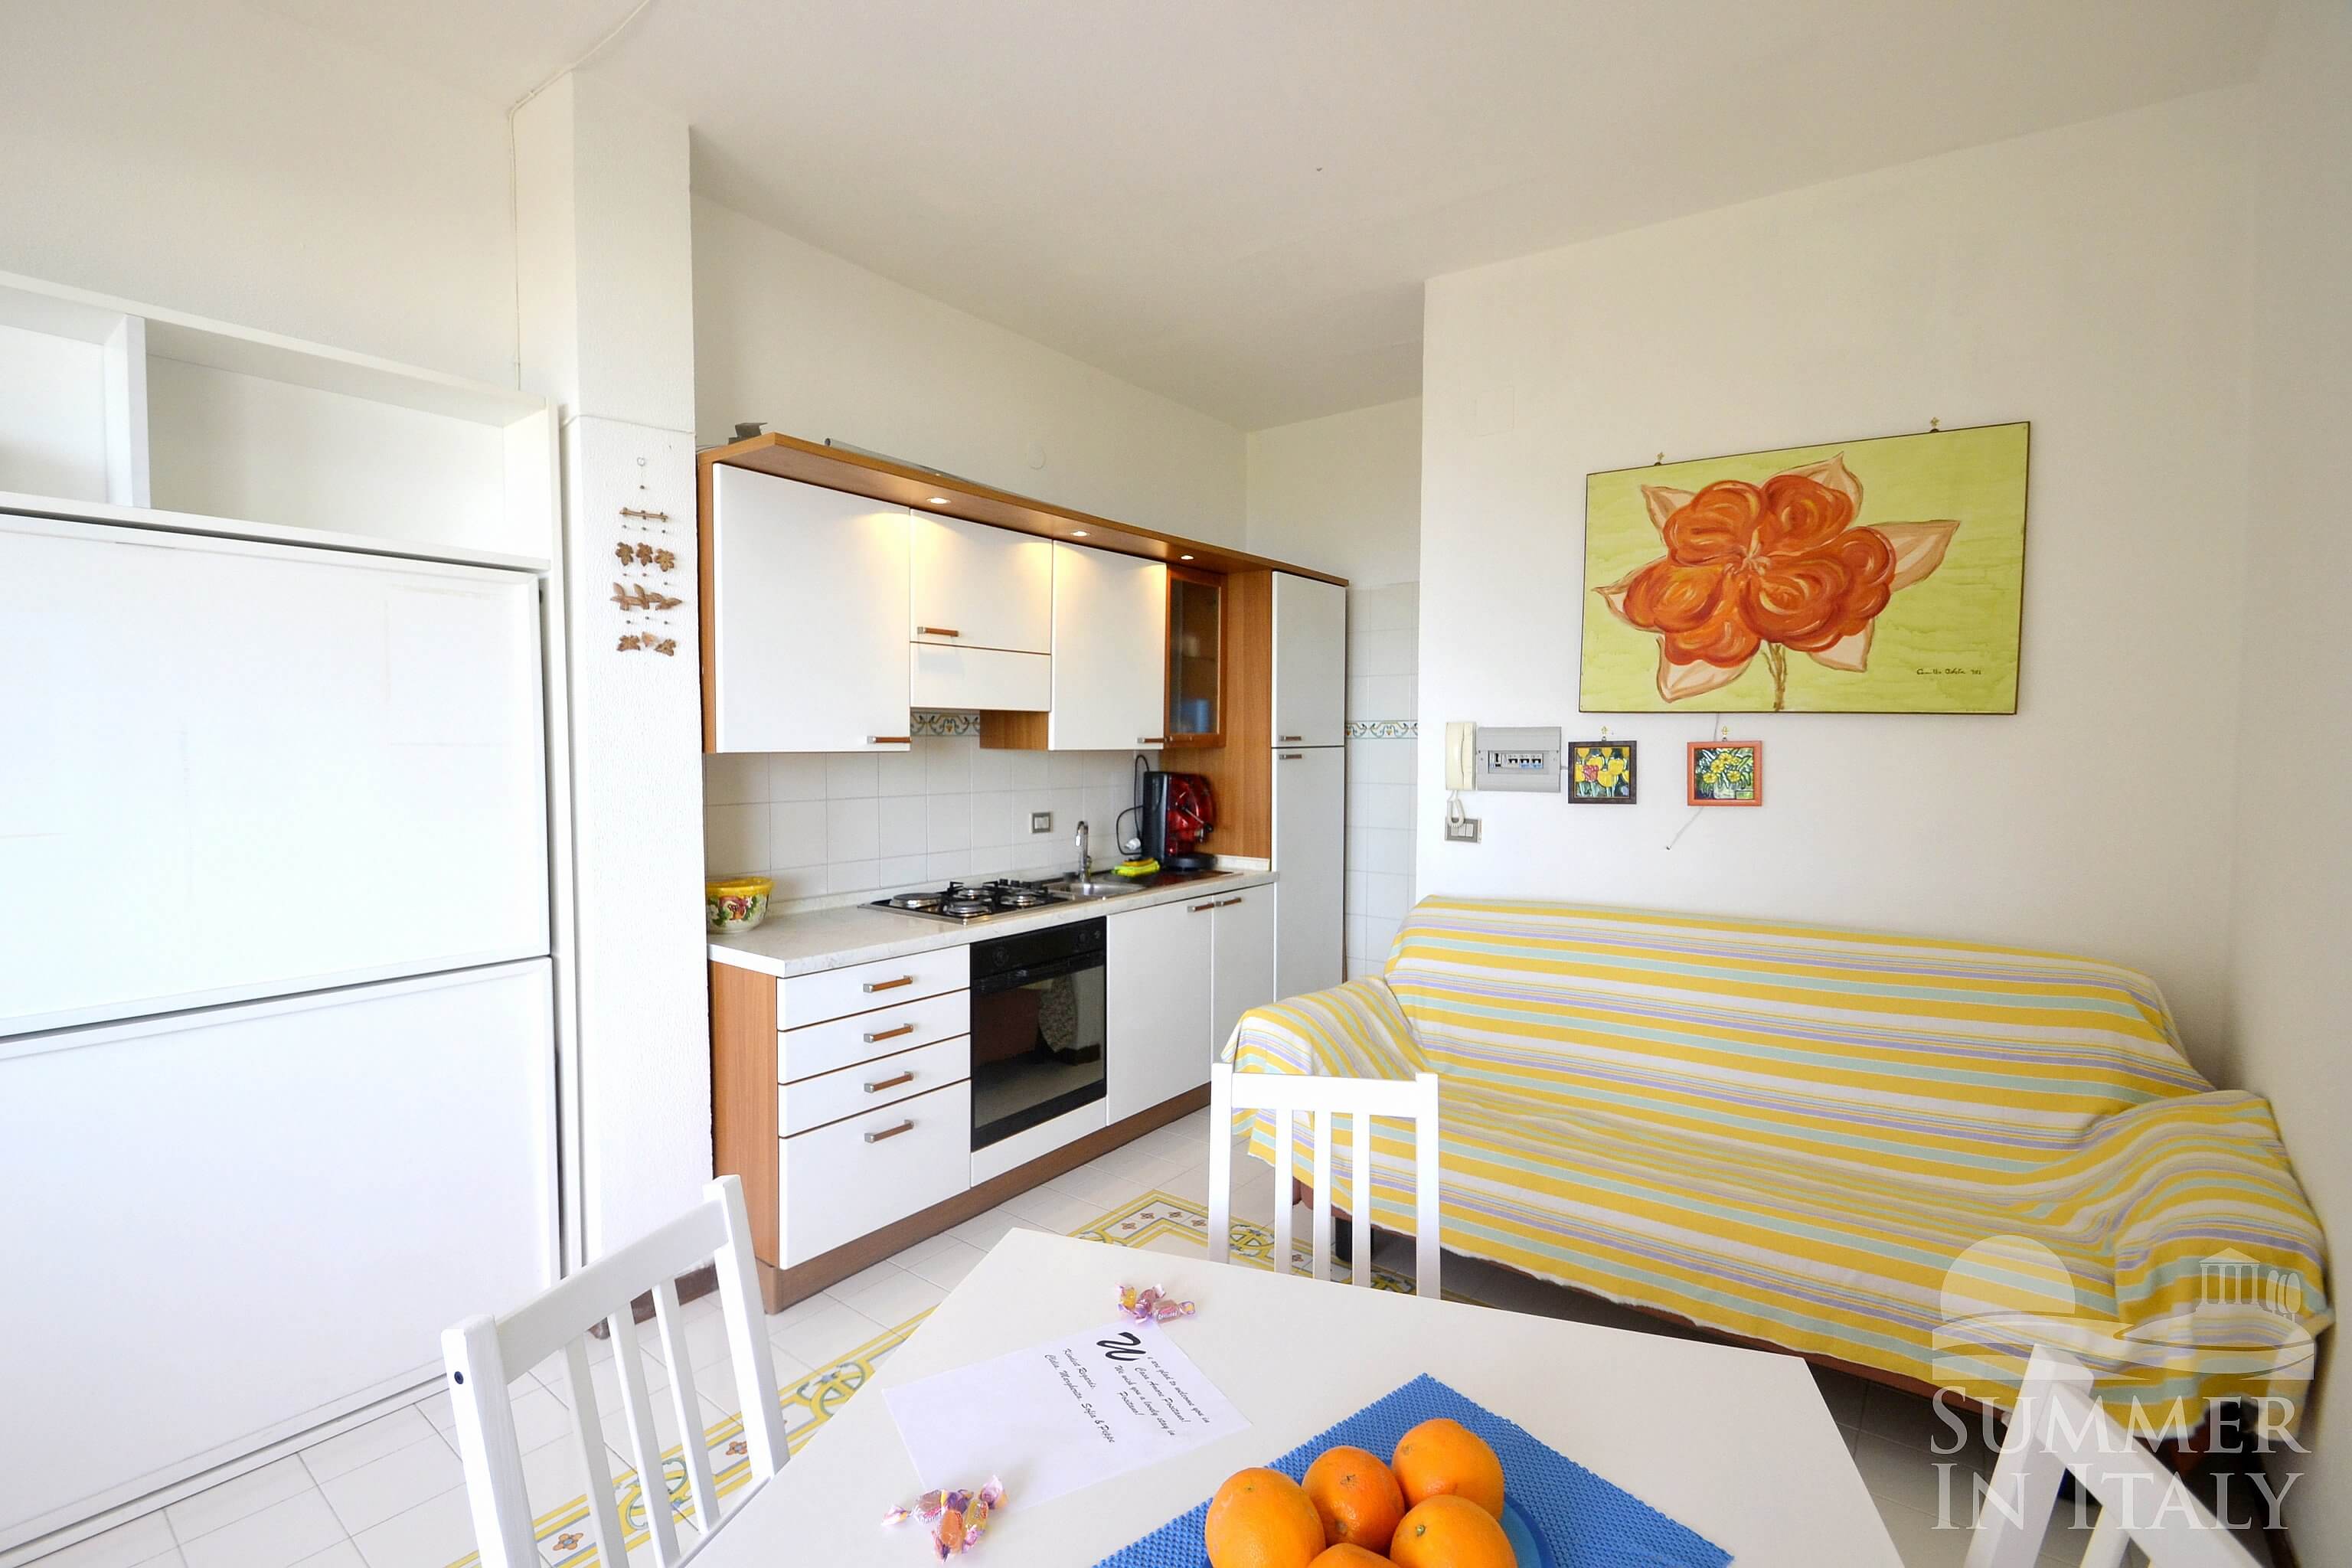 Casa Aminata: Self catering accommodation in Positano, Amalfi Coast, Italy